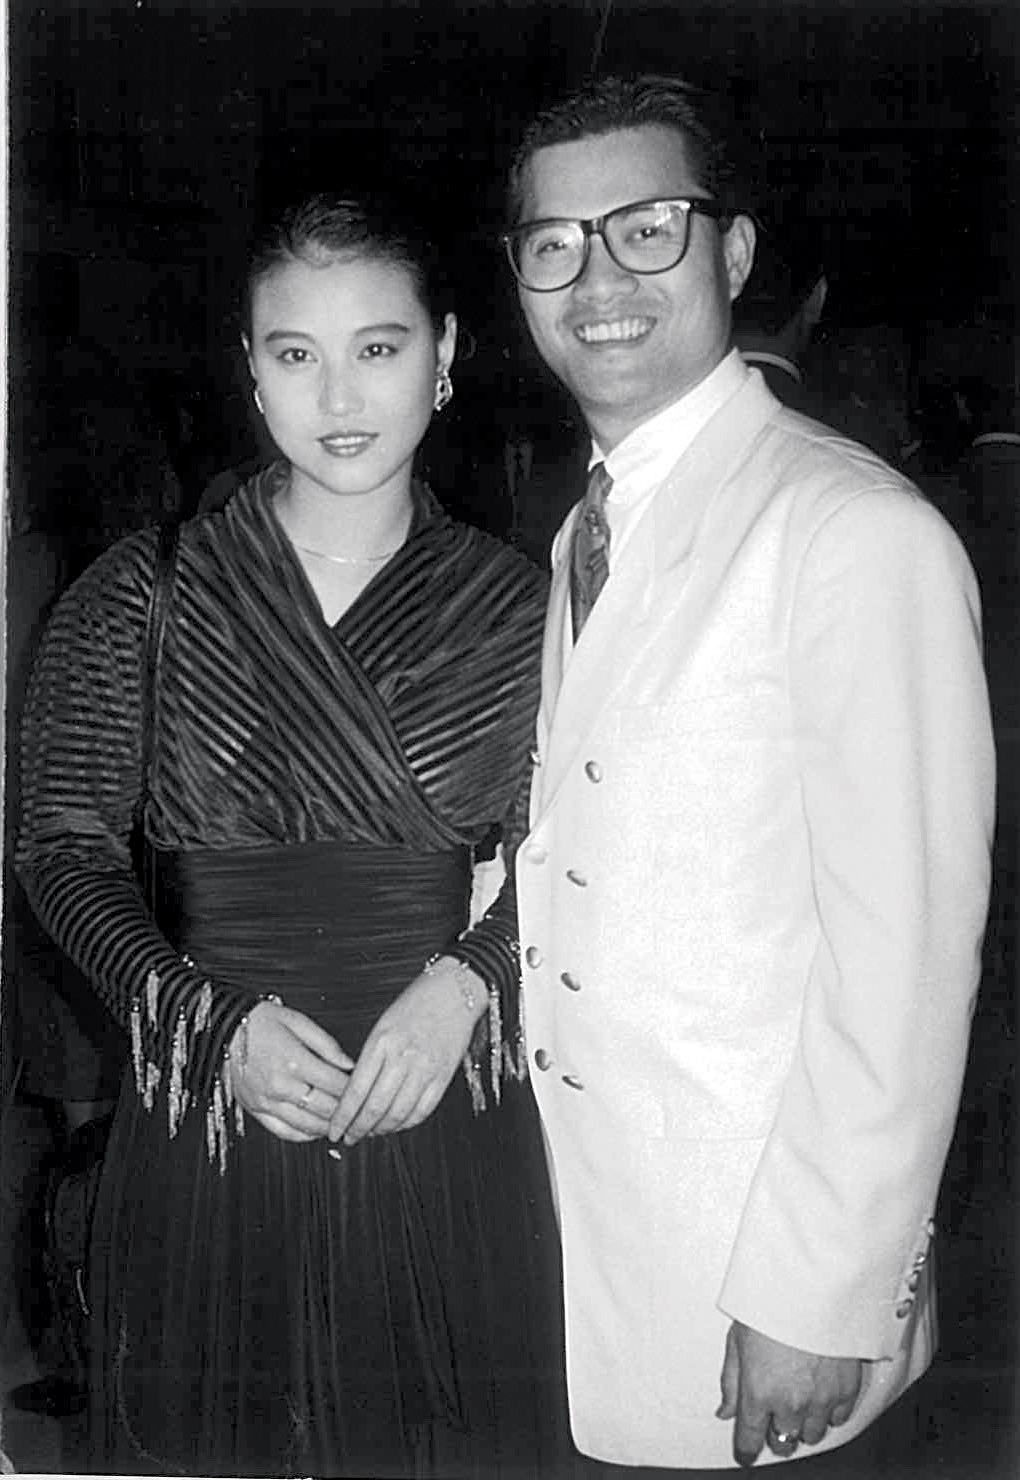 呂良偉、周海媚1986年拍《小島風雲》撻着，兩年後到美國「秘婚」，不過原來當年呂良偉搞烏龍，兩人只有登記，並未正式註冊結婚。